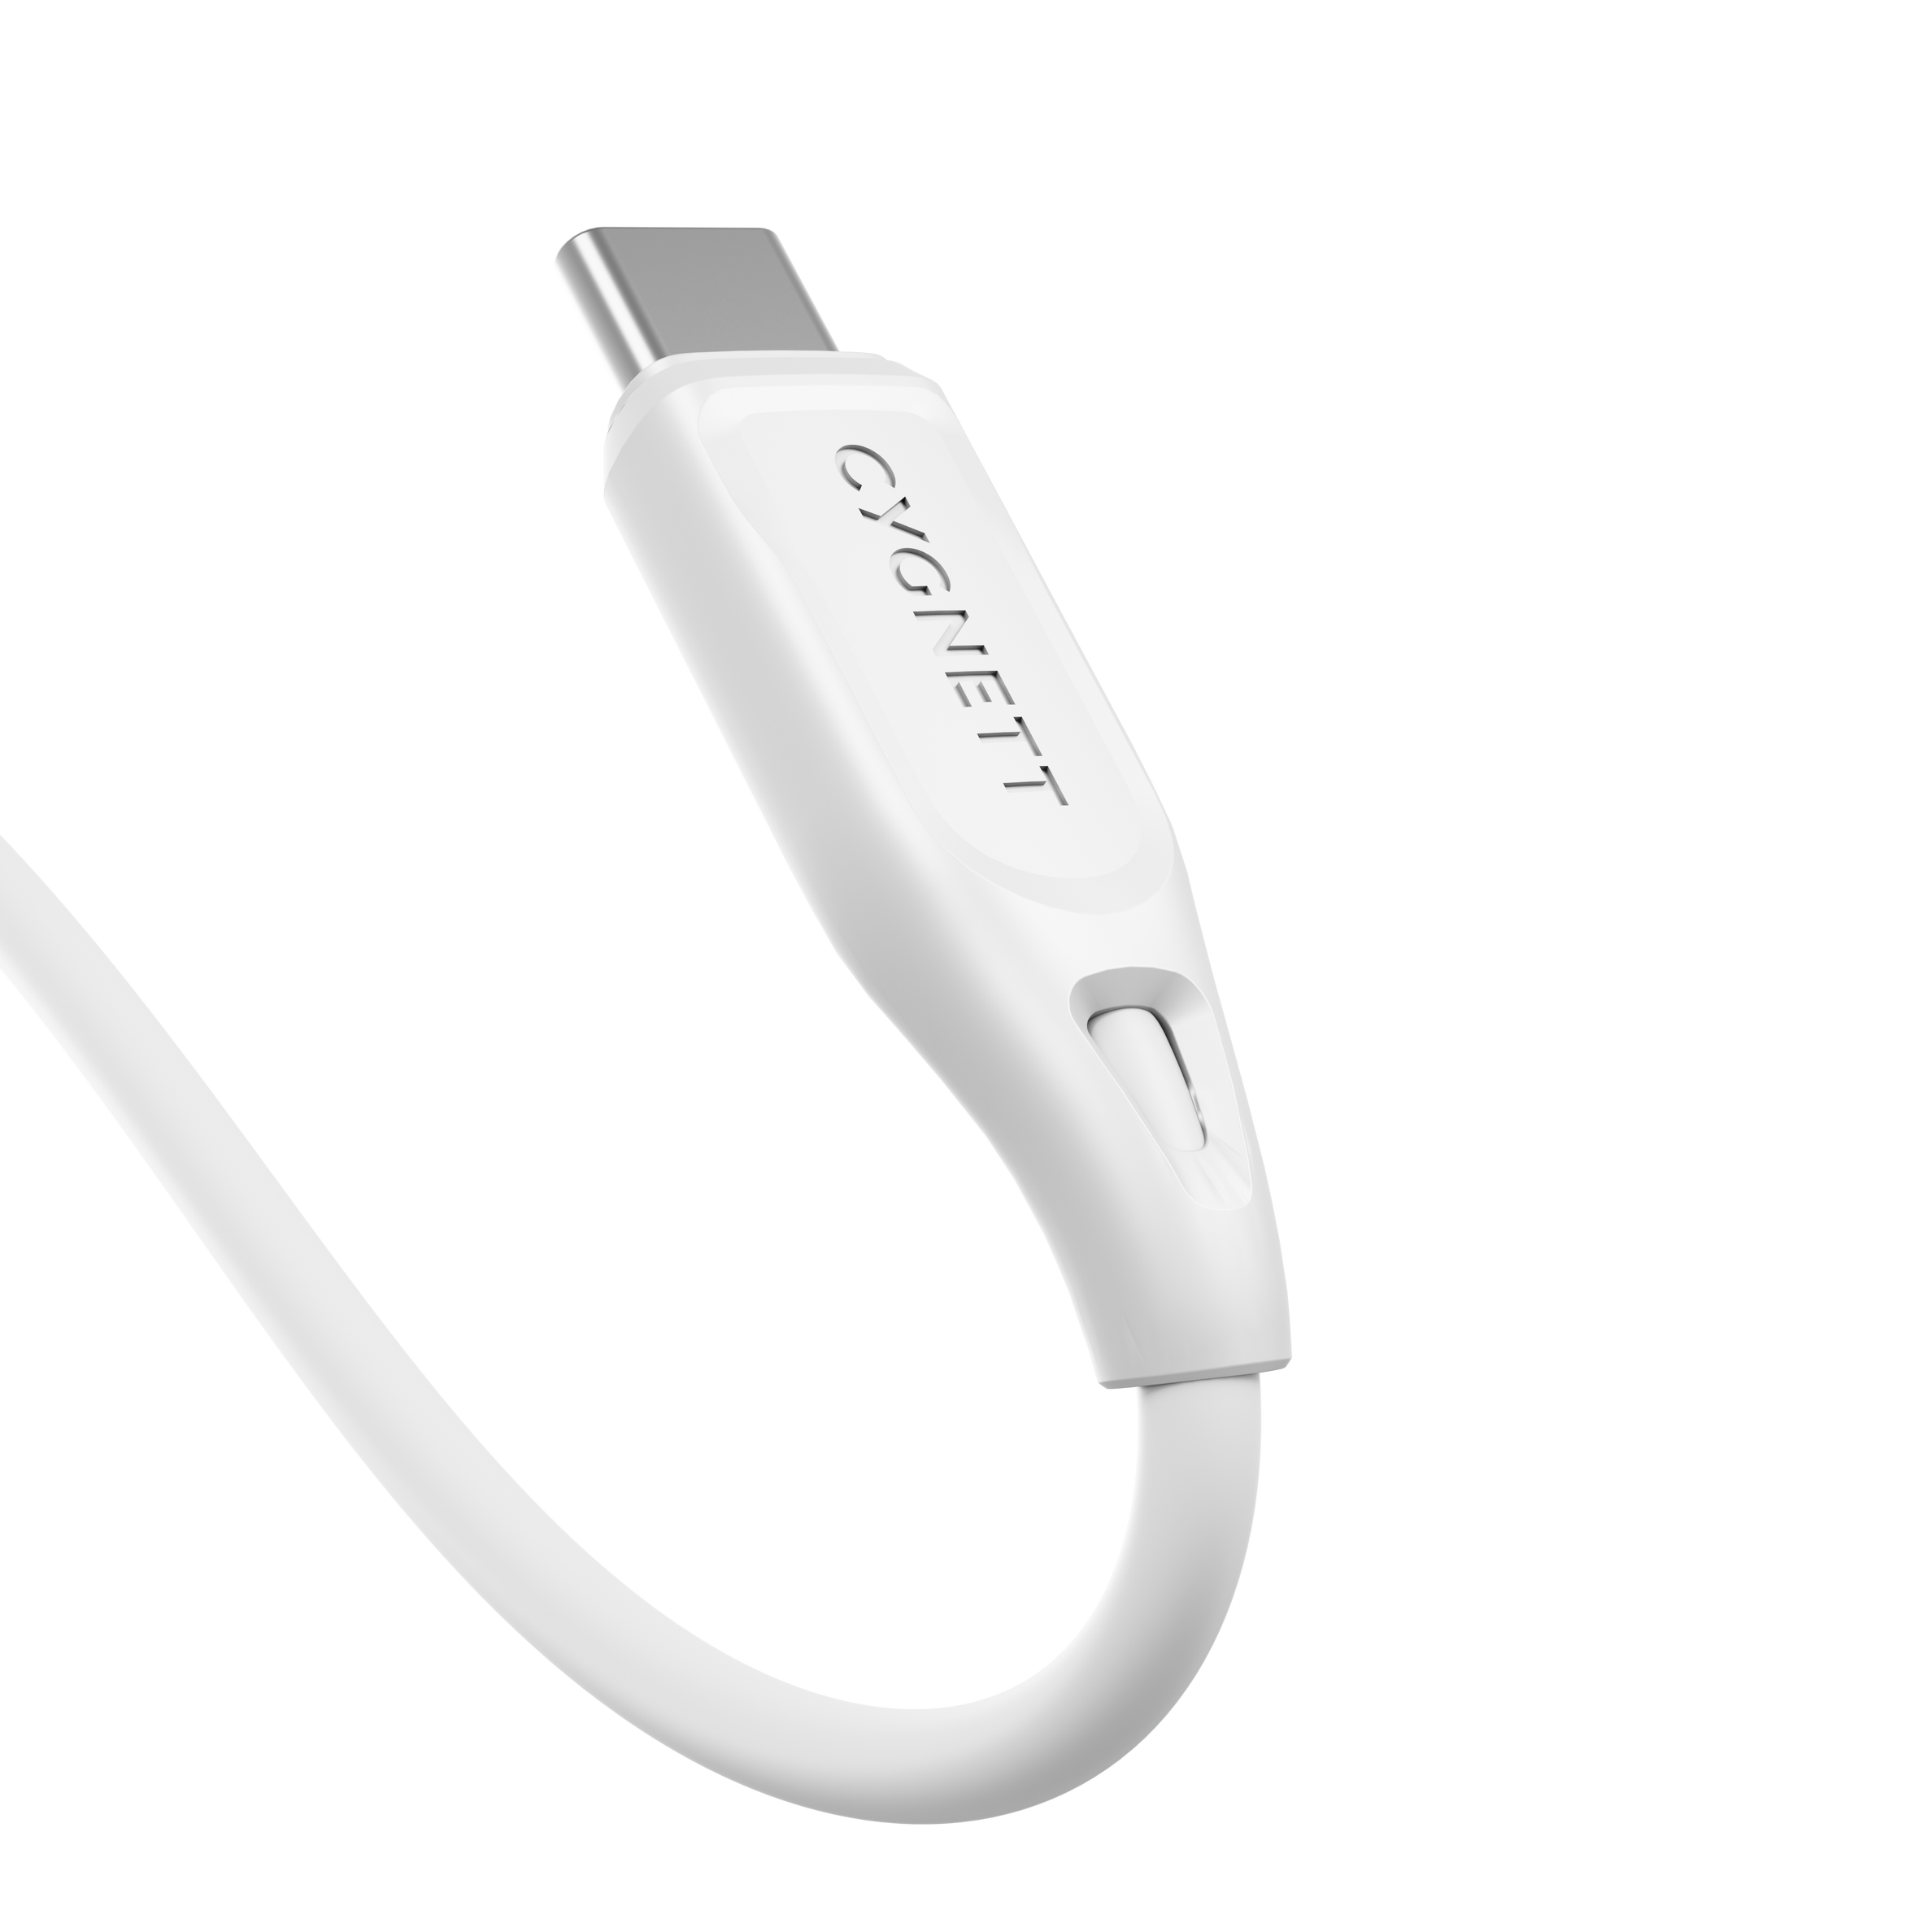 USB-C to USB-A (2.0) Cable 1m - White - Cygnett (AU)